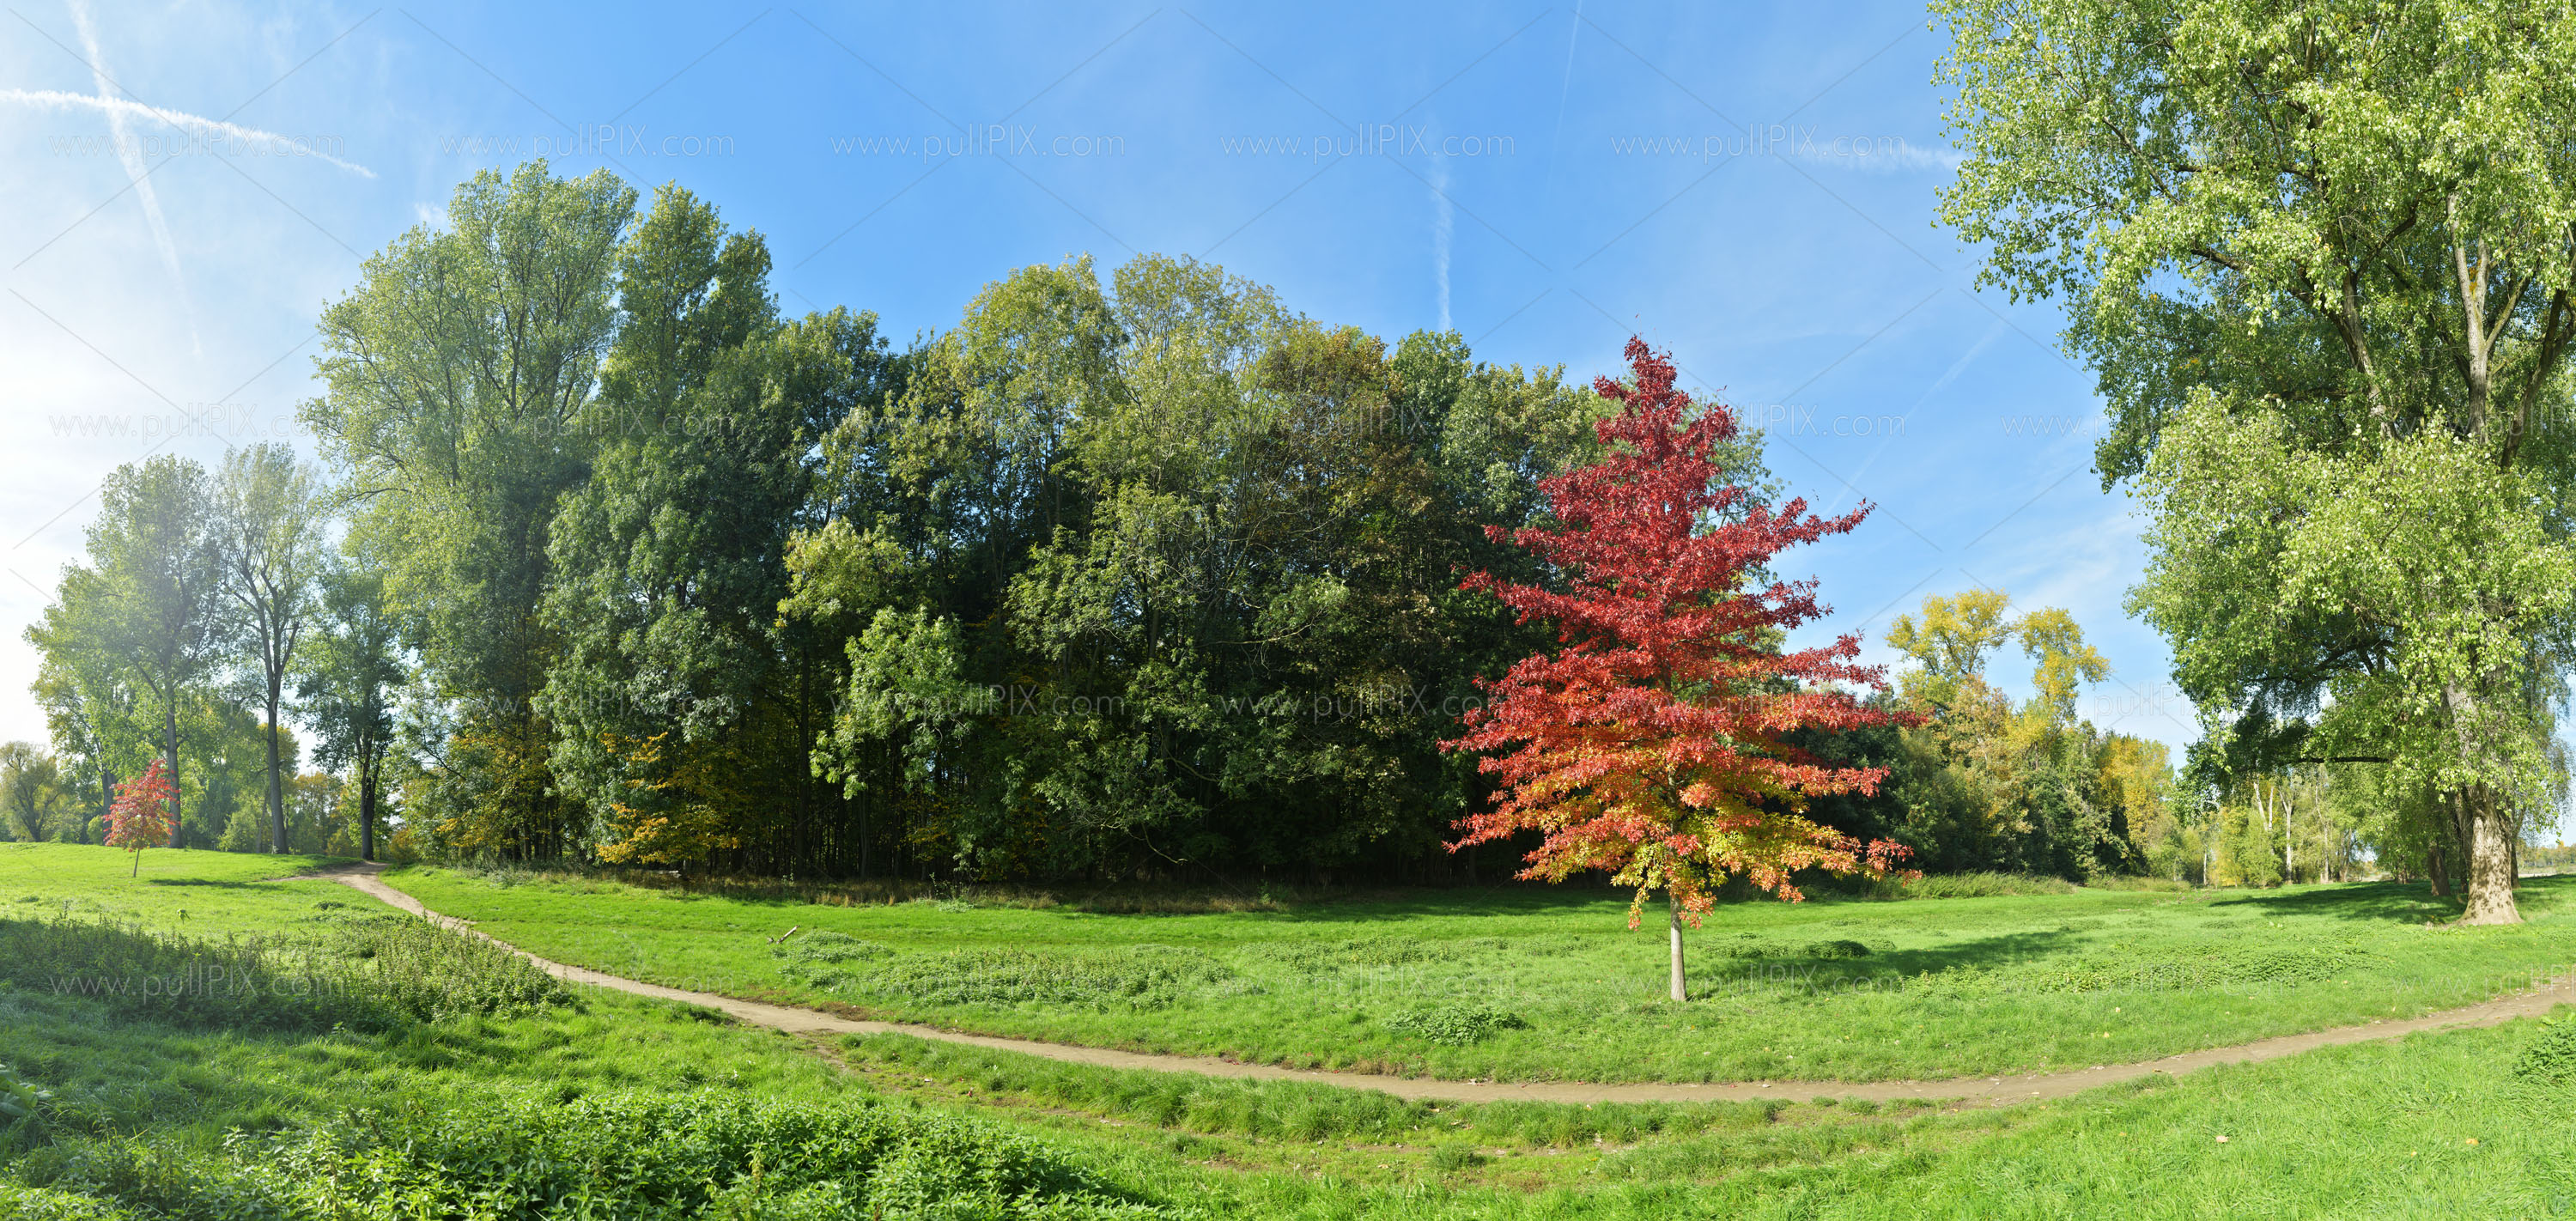 Preview Rheinauen mit rotem Baum.jpg